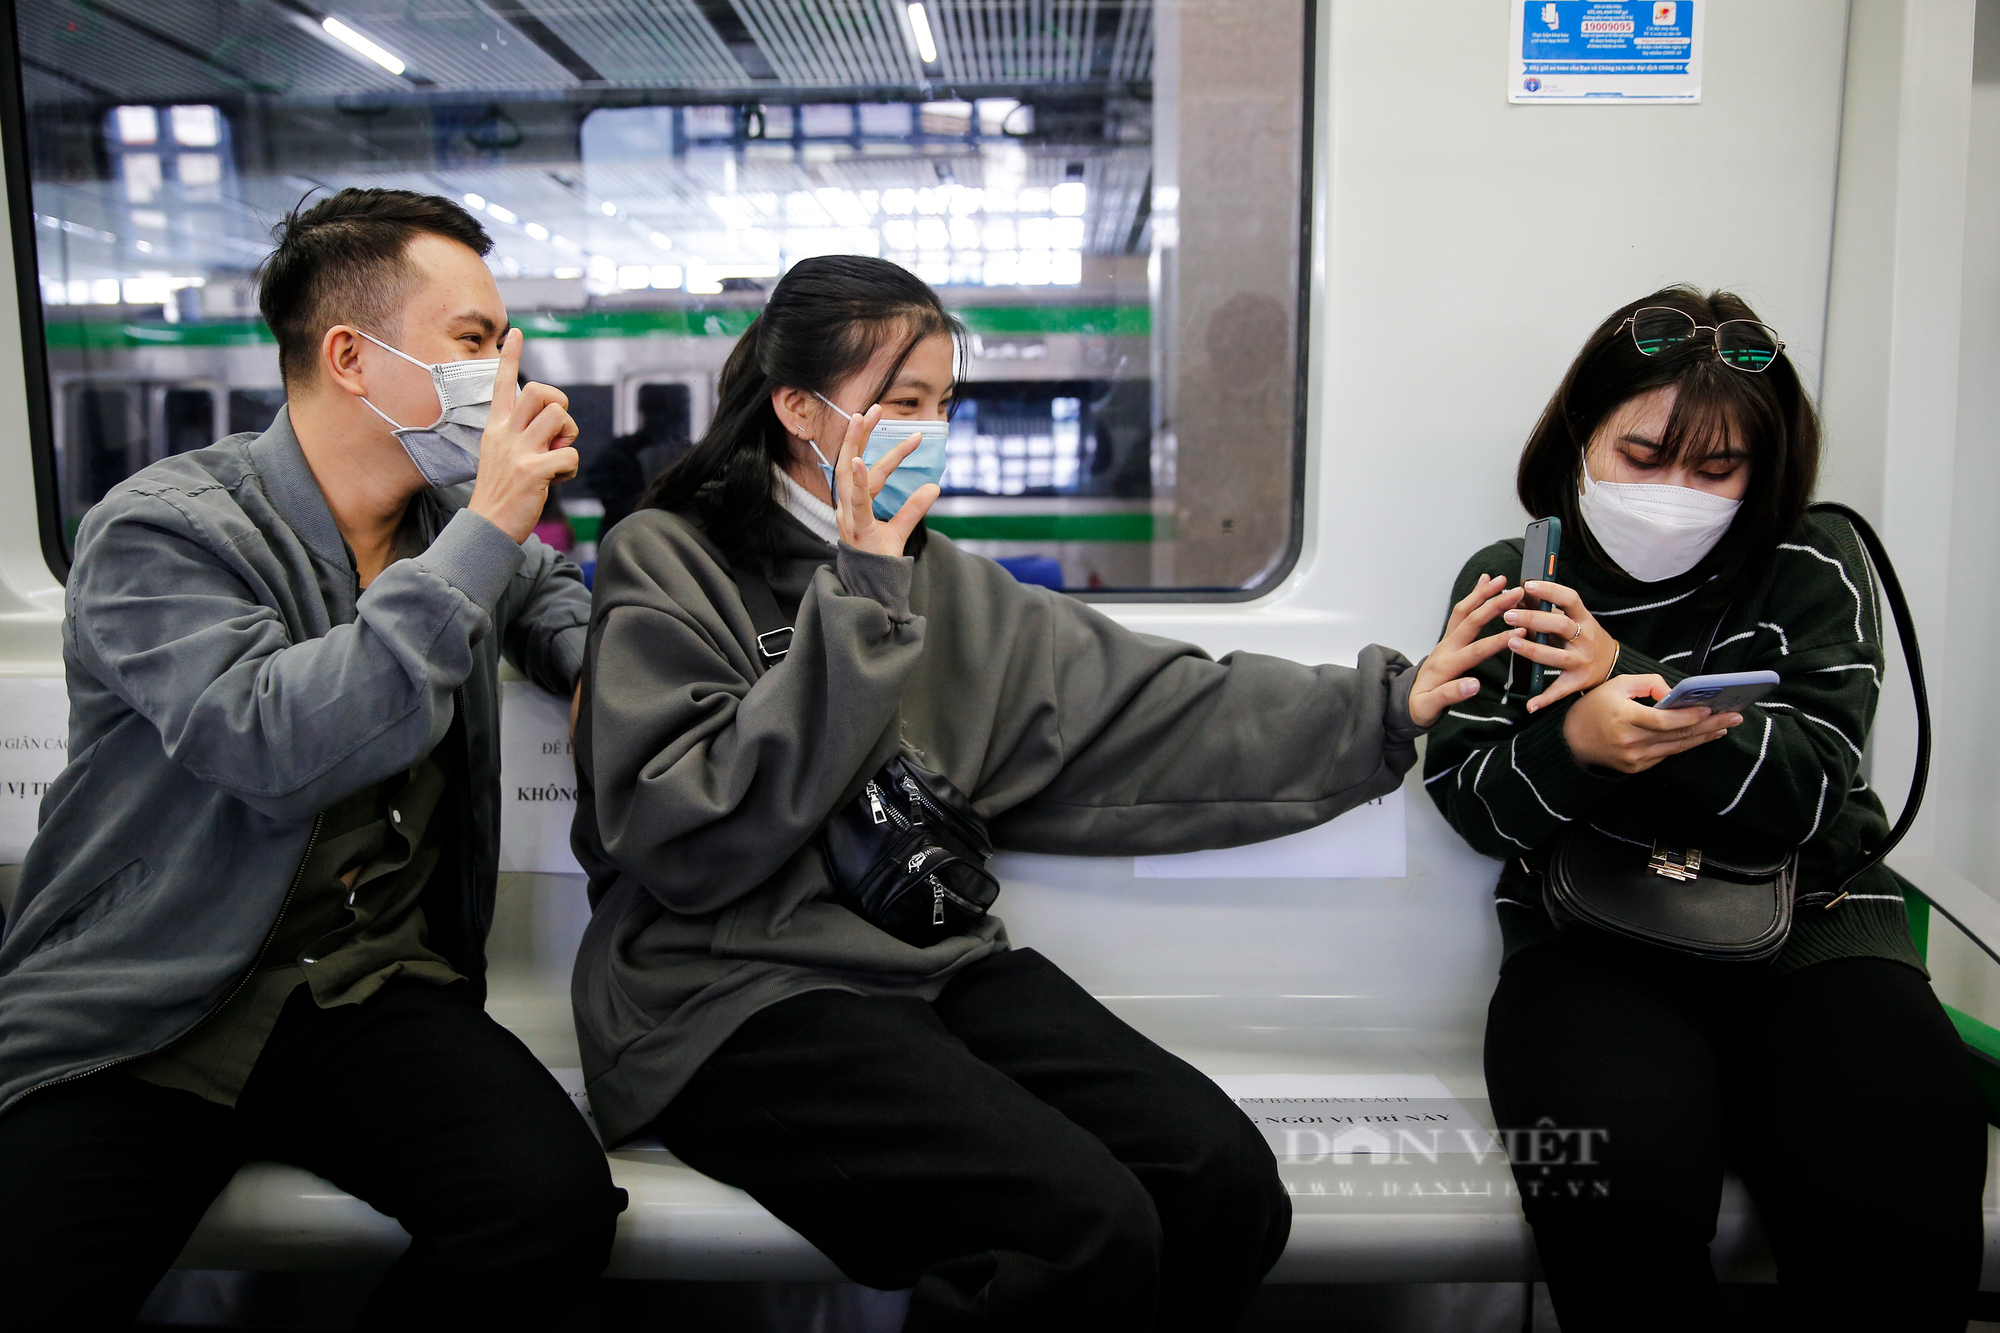 Ga tàu Cát Linh - Hà Đông bất ngờ vắng vẻ, giới trẻ Hà Nội rủ nhau đến chụp ảnh check-in  - Ảnh 7.